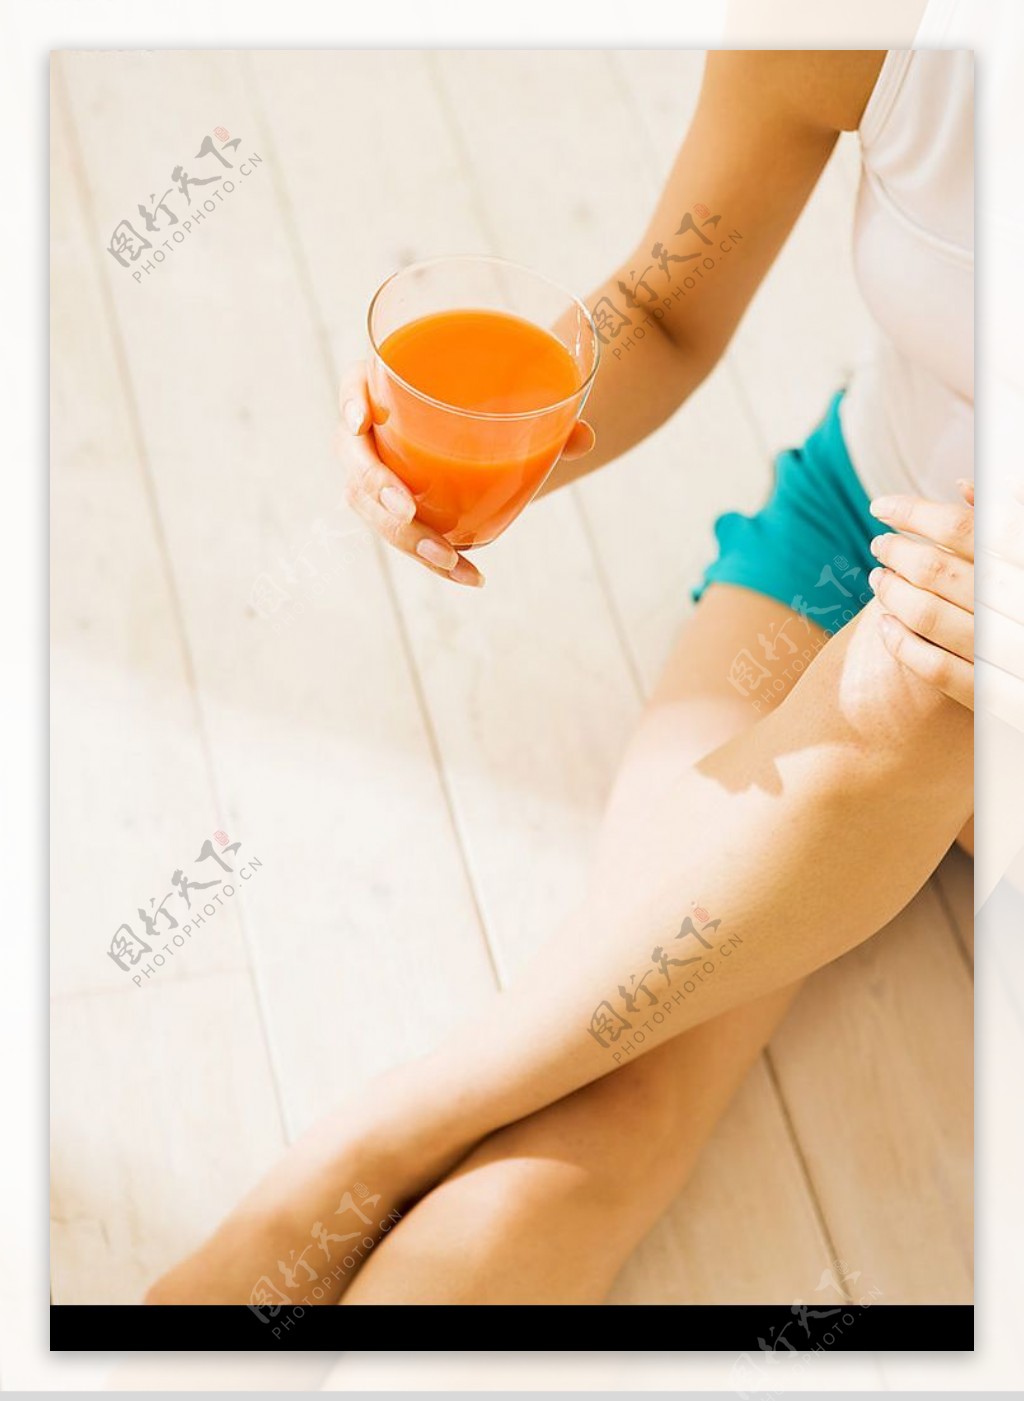 坐在地板上喝果汁的美女图片